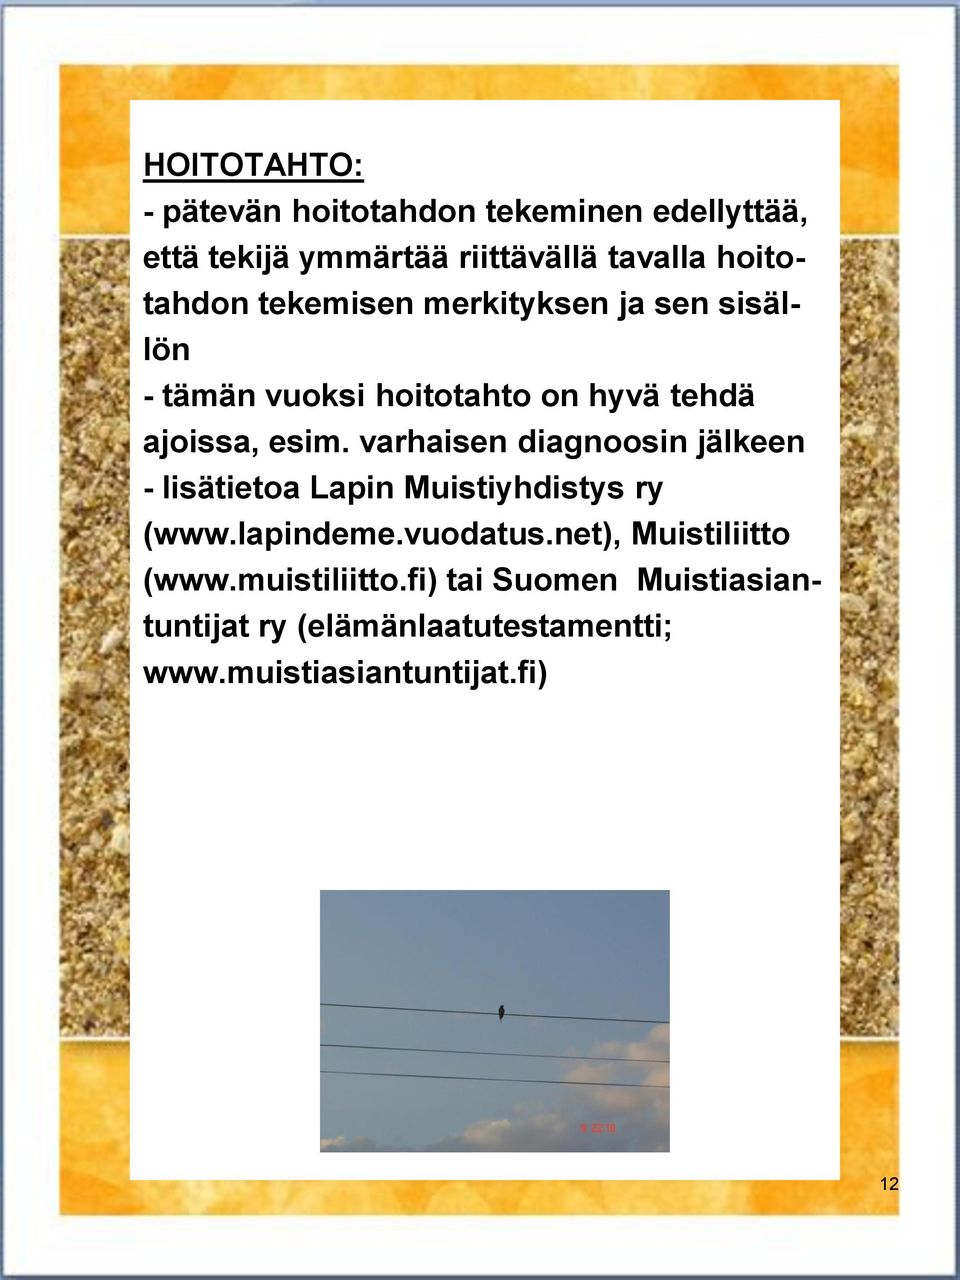 varhaisen diagnoosin jälkeen - lisätietoa Lapin Muistiyhdistys ry (www.lapindeme.vuodatus.